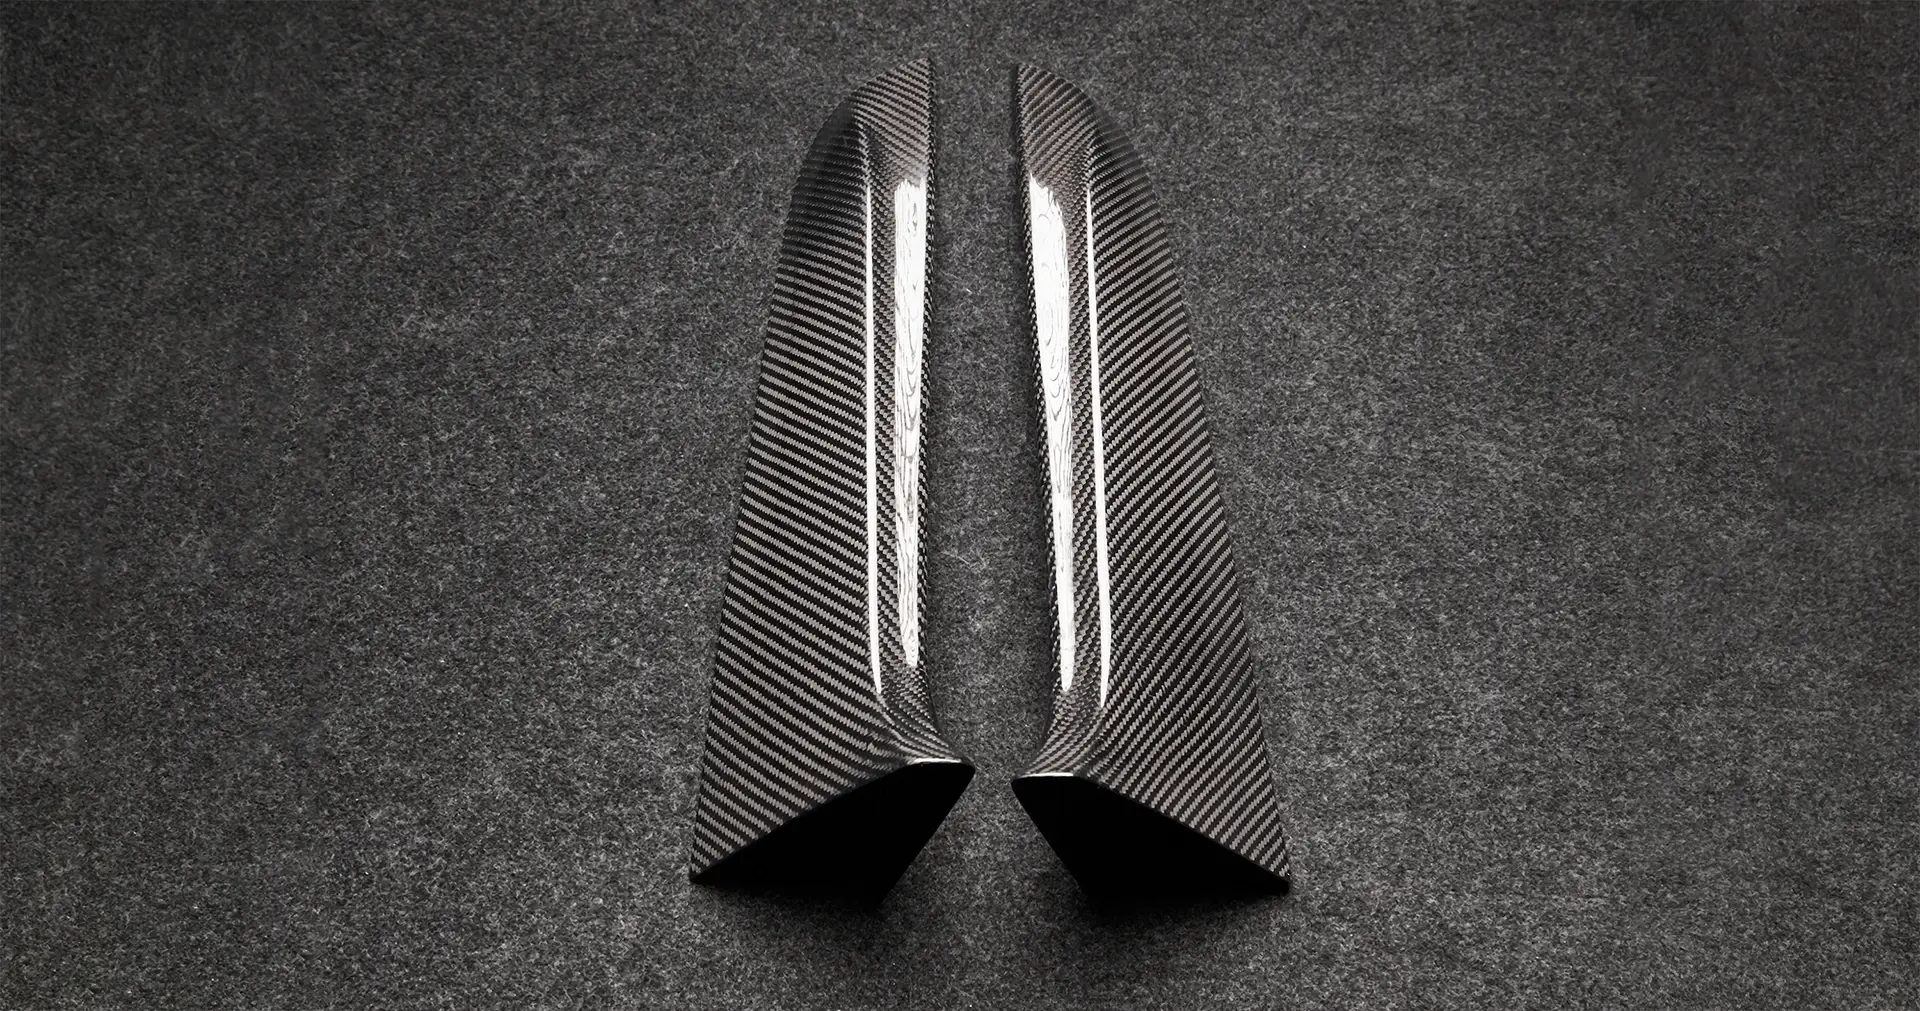 Bitte bestellen Sie eine Carbonfaser-Verkleidung für den Kofferraumdeckelträger des Bentley Bentayga MLB bentayga-speed-edition-12 6.0-LITER TWIN TURBO W12 TYROLEAN /2020/2021/2022/2023/2024